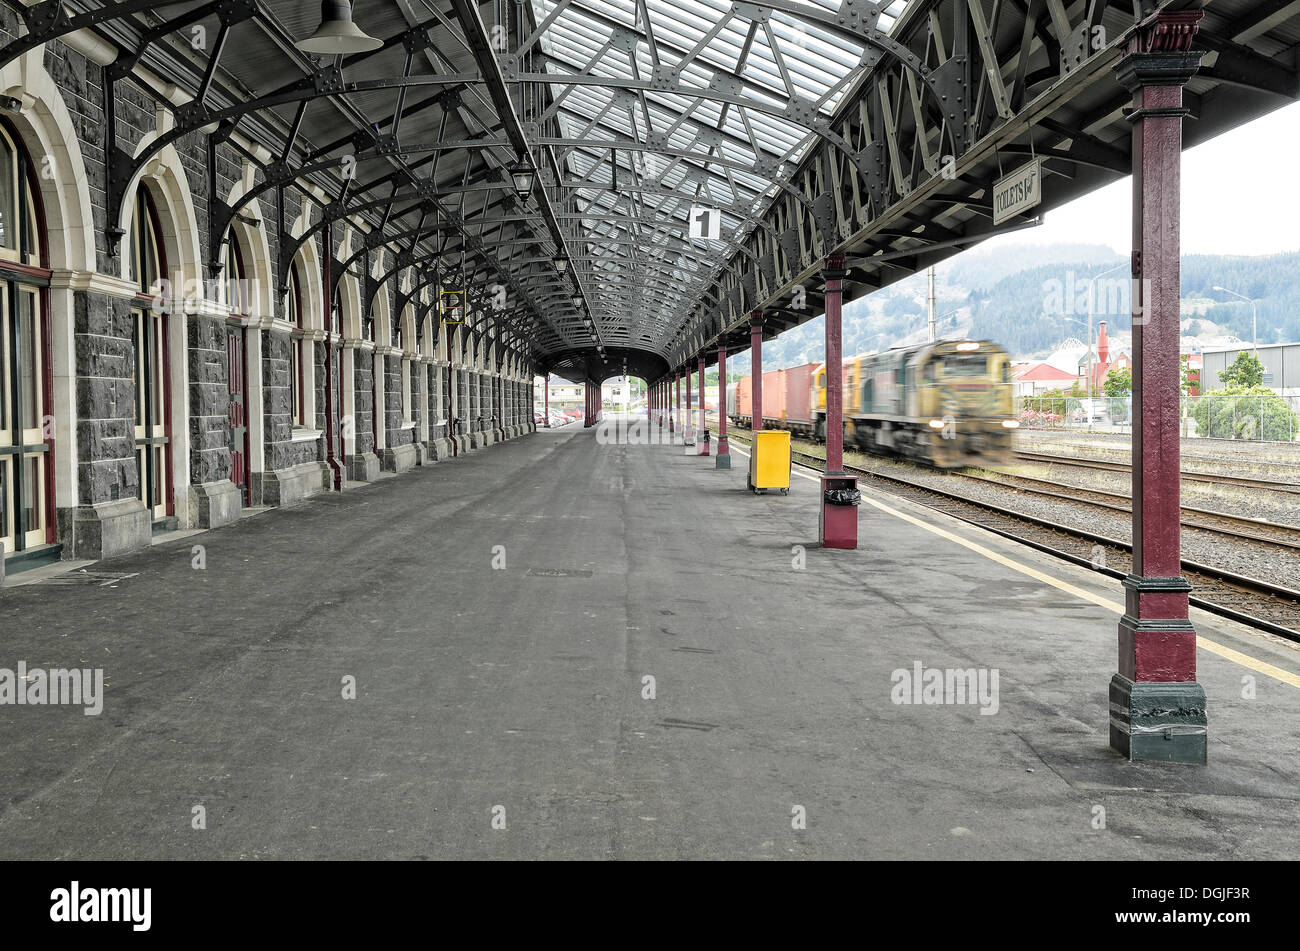 Piattaforma con un treno che entrano nella stazione, storico Dunedin stazione ferroviaria, Dunedin, Isola del Sud, Nuova Zelanda, Oceania Foto Stock